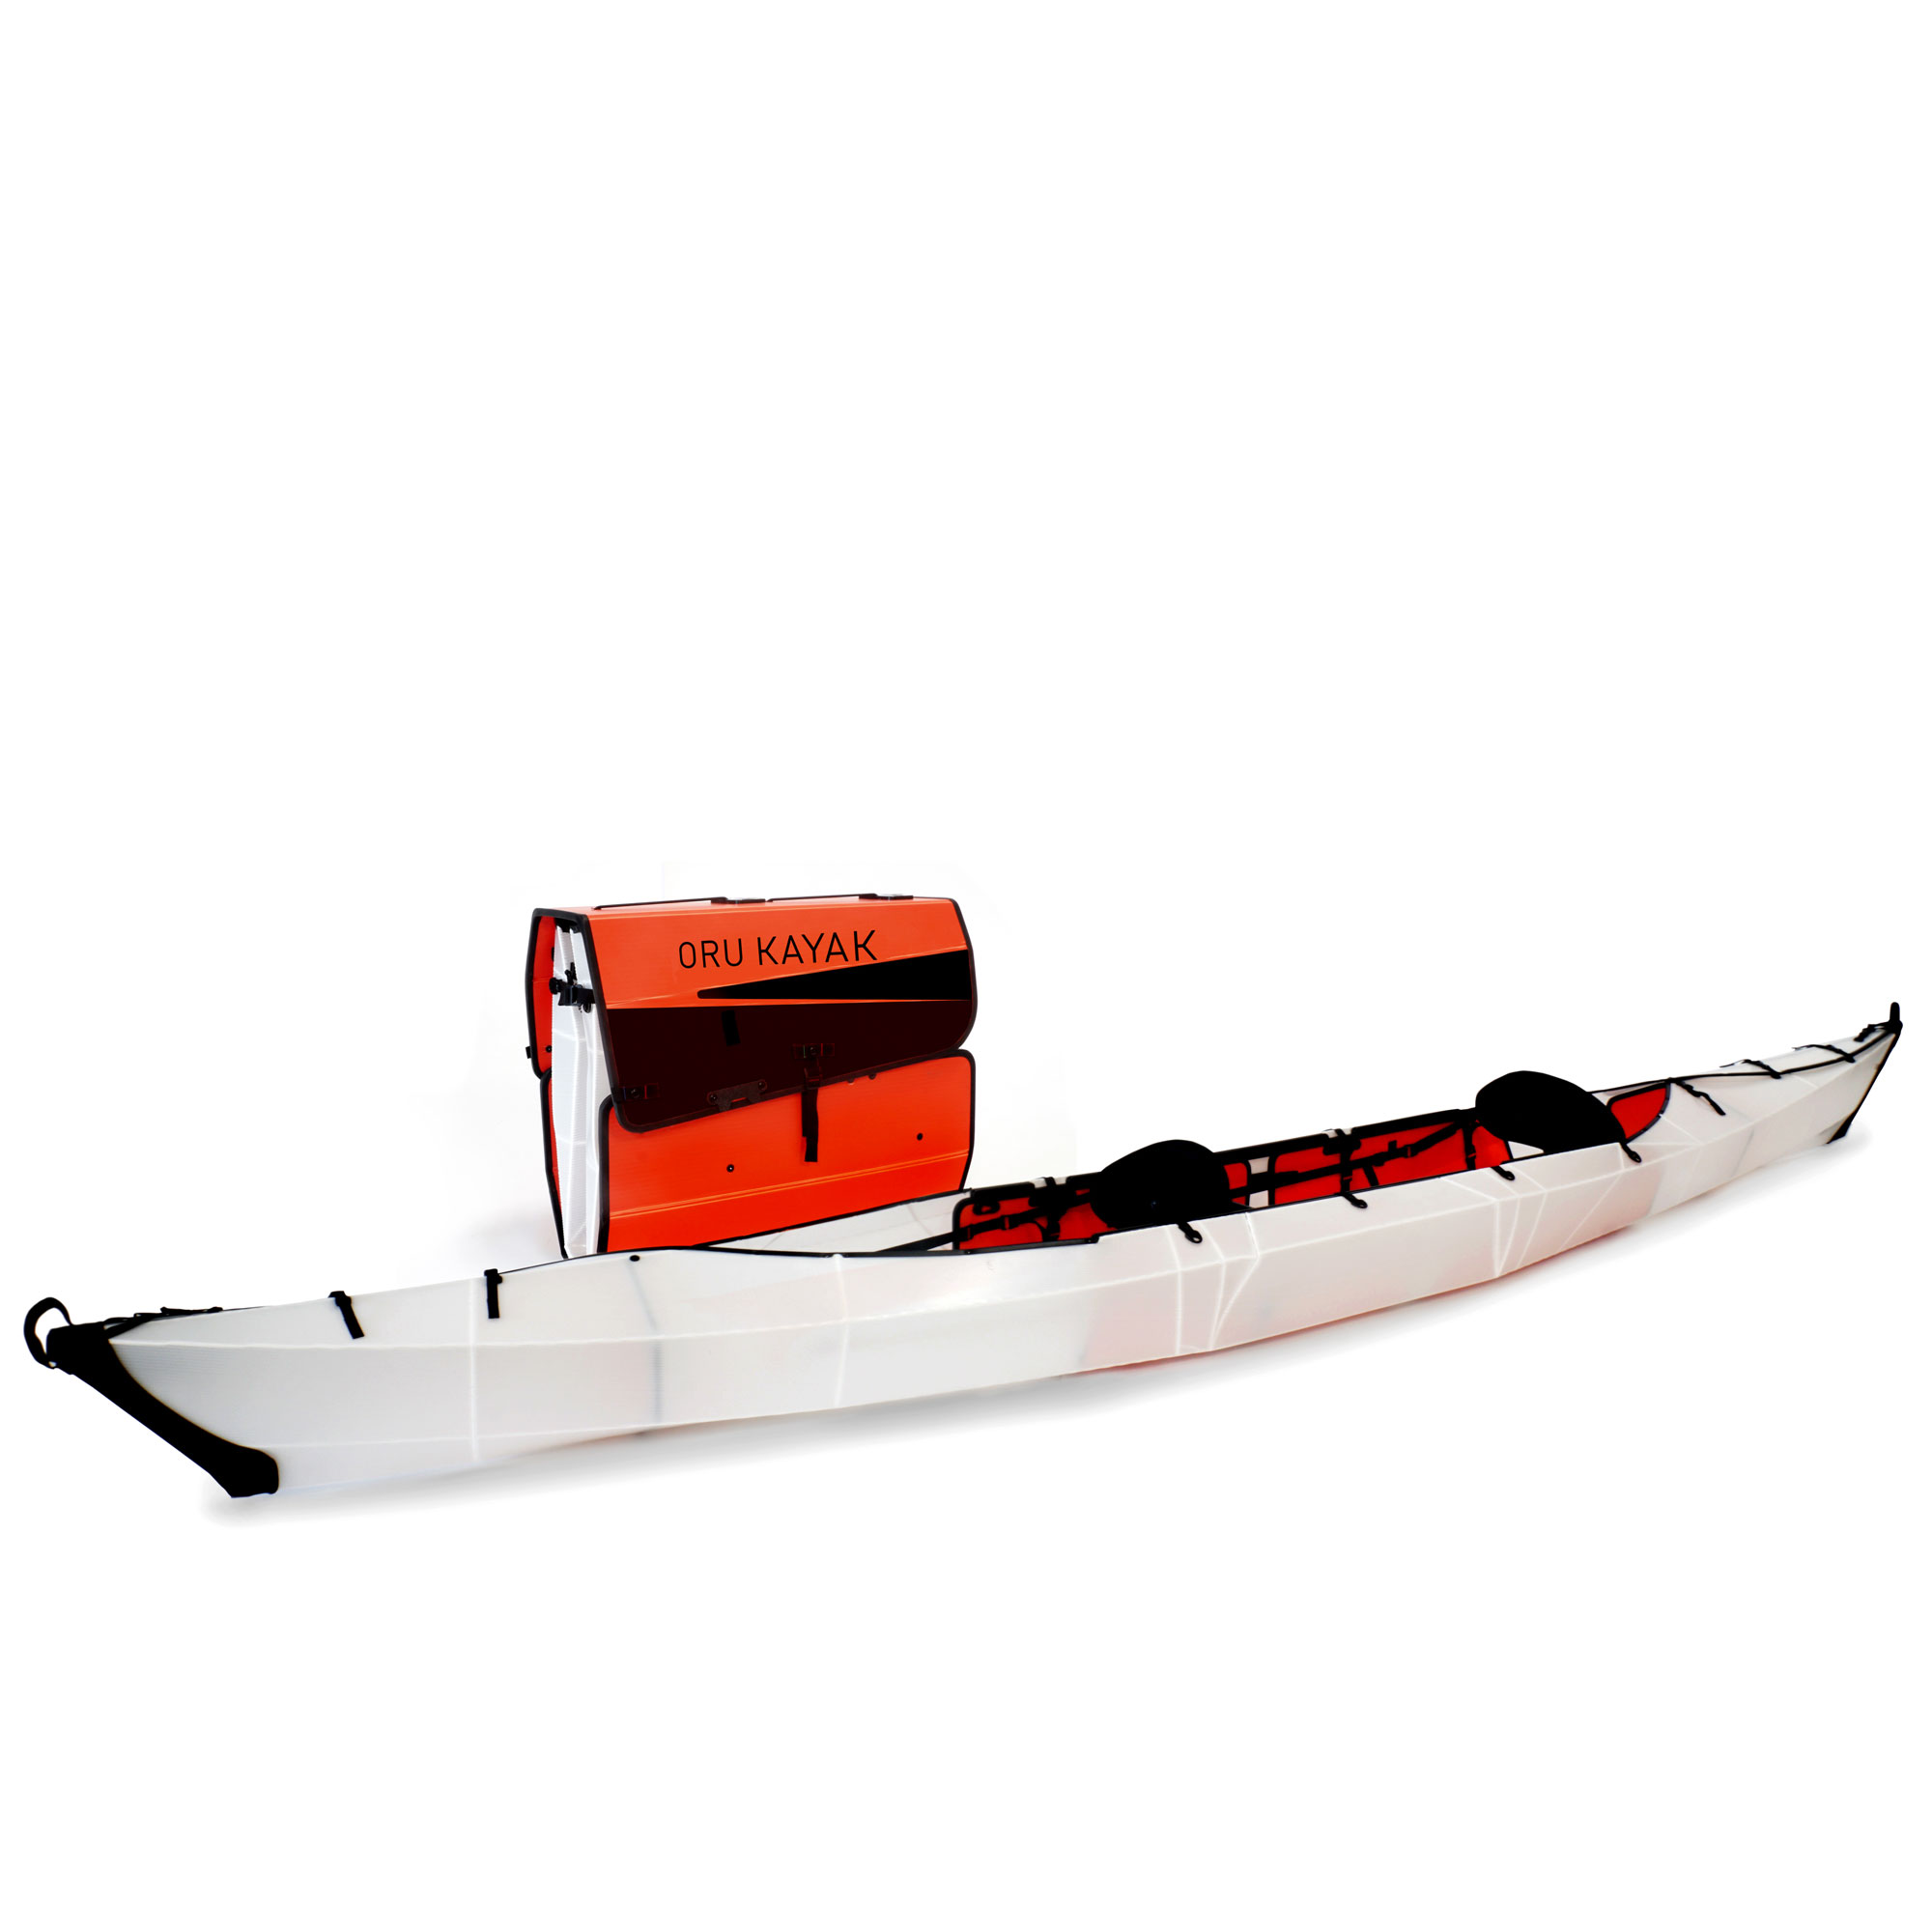 Oru Kayak Haven Folding Kayak - 16' [Refurbished] $999 + Tax/Shipping